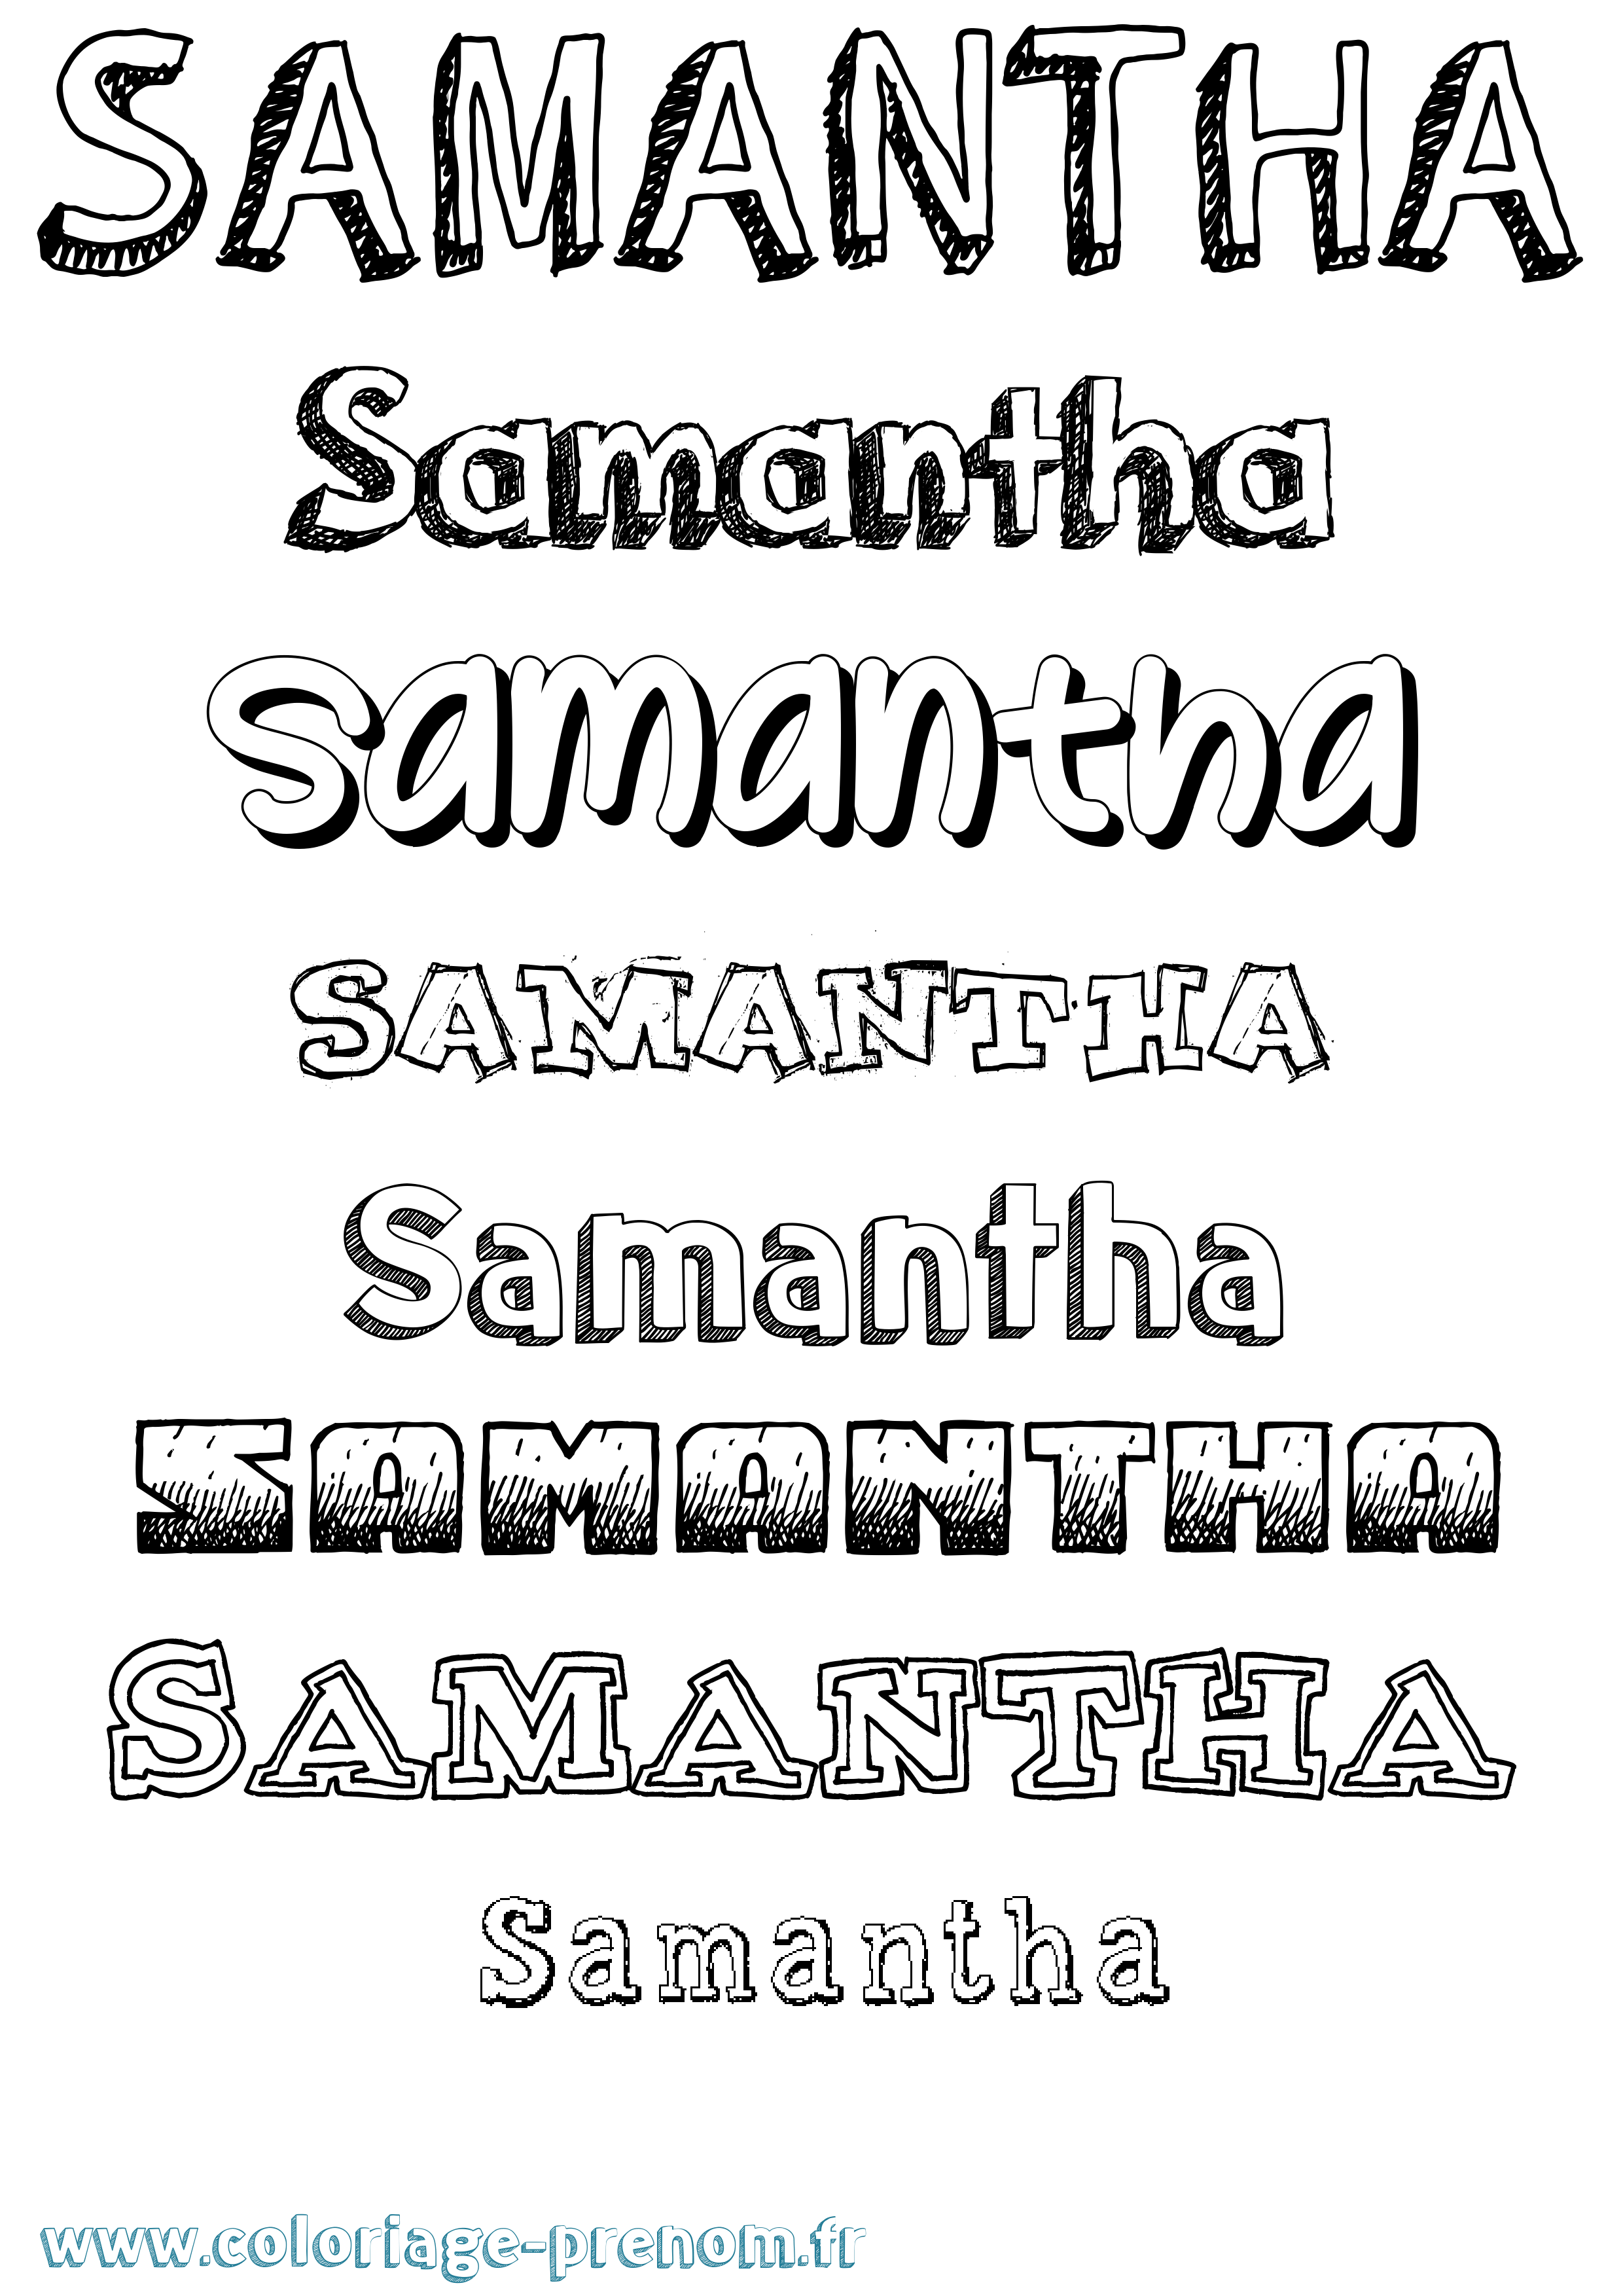 Coloriage prénom Samantha